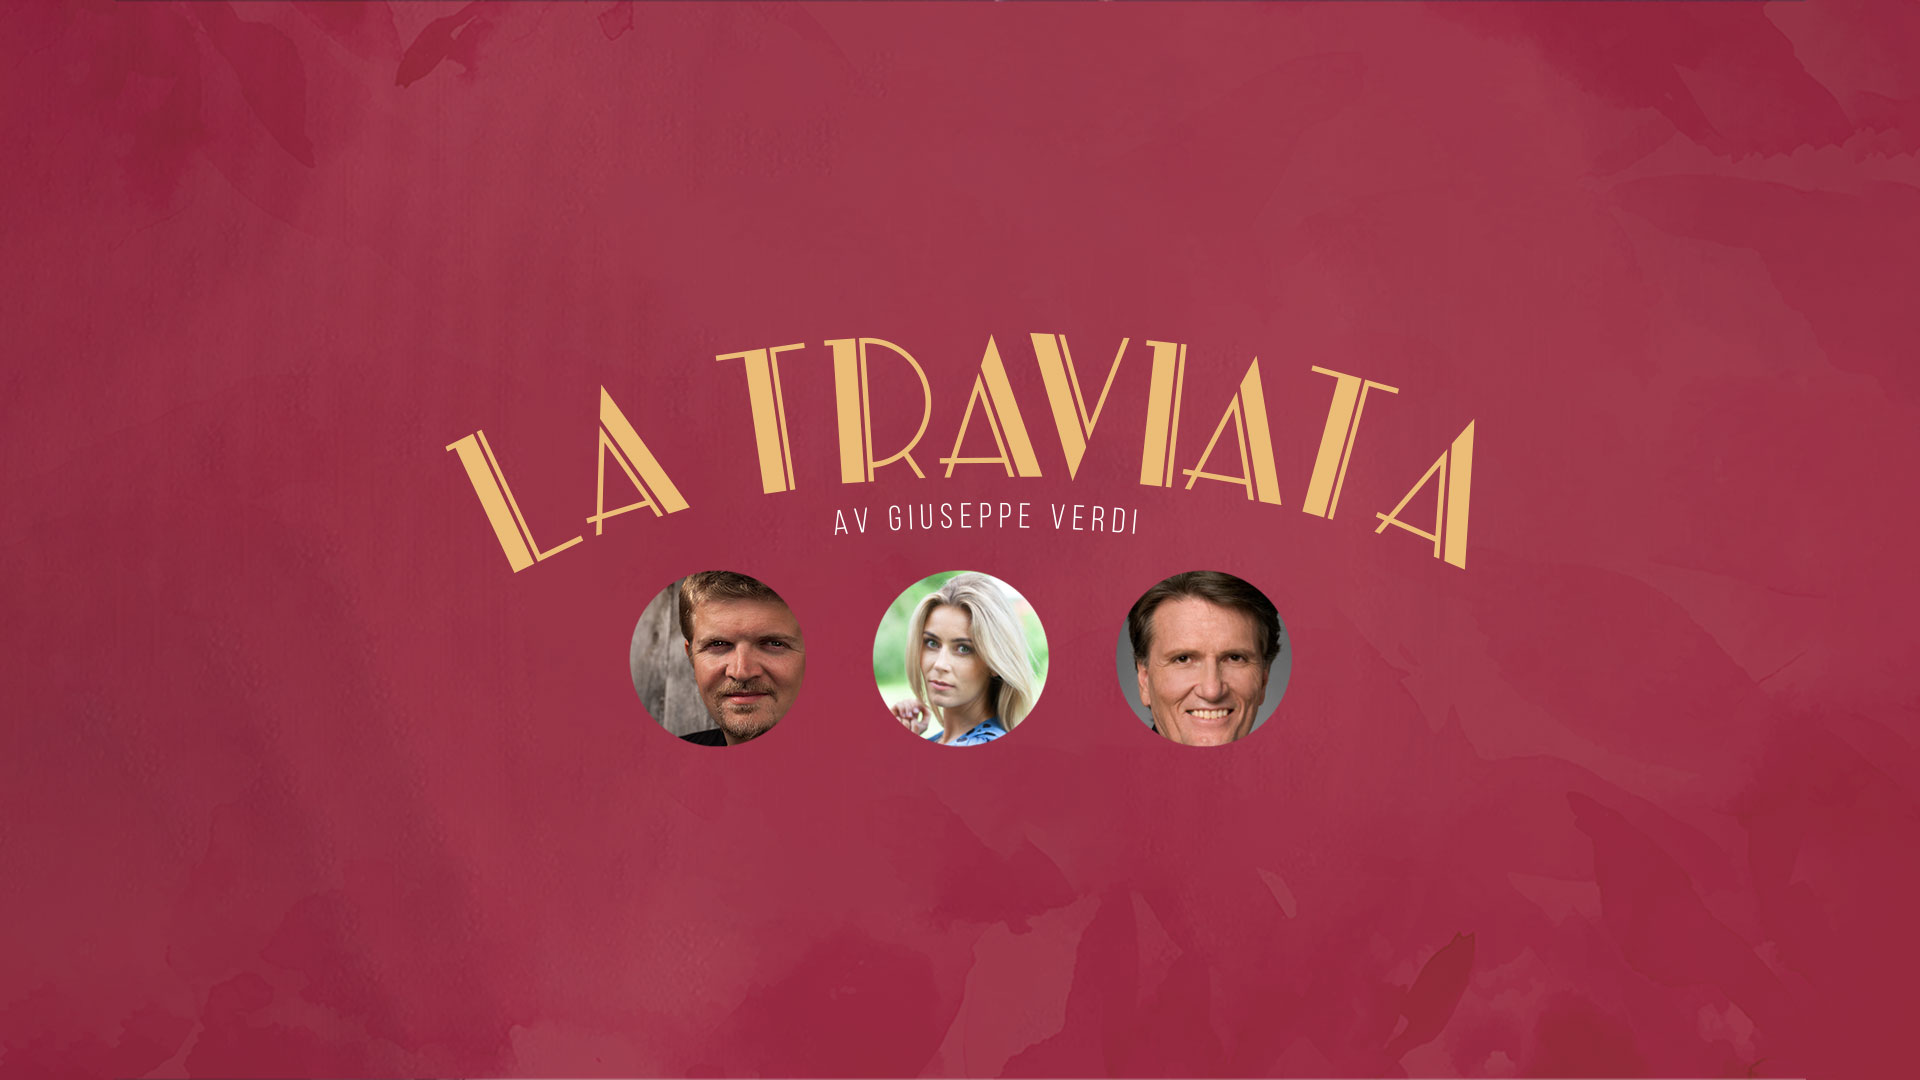 Omslagsbilete for La Traviata